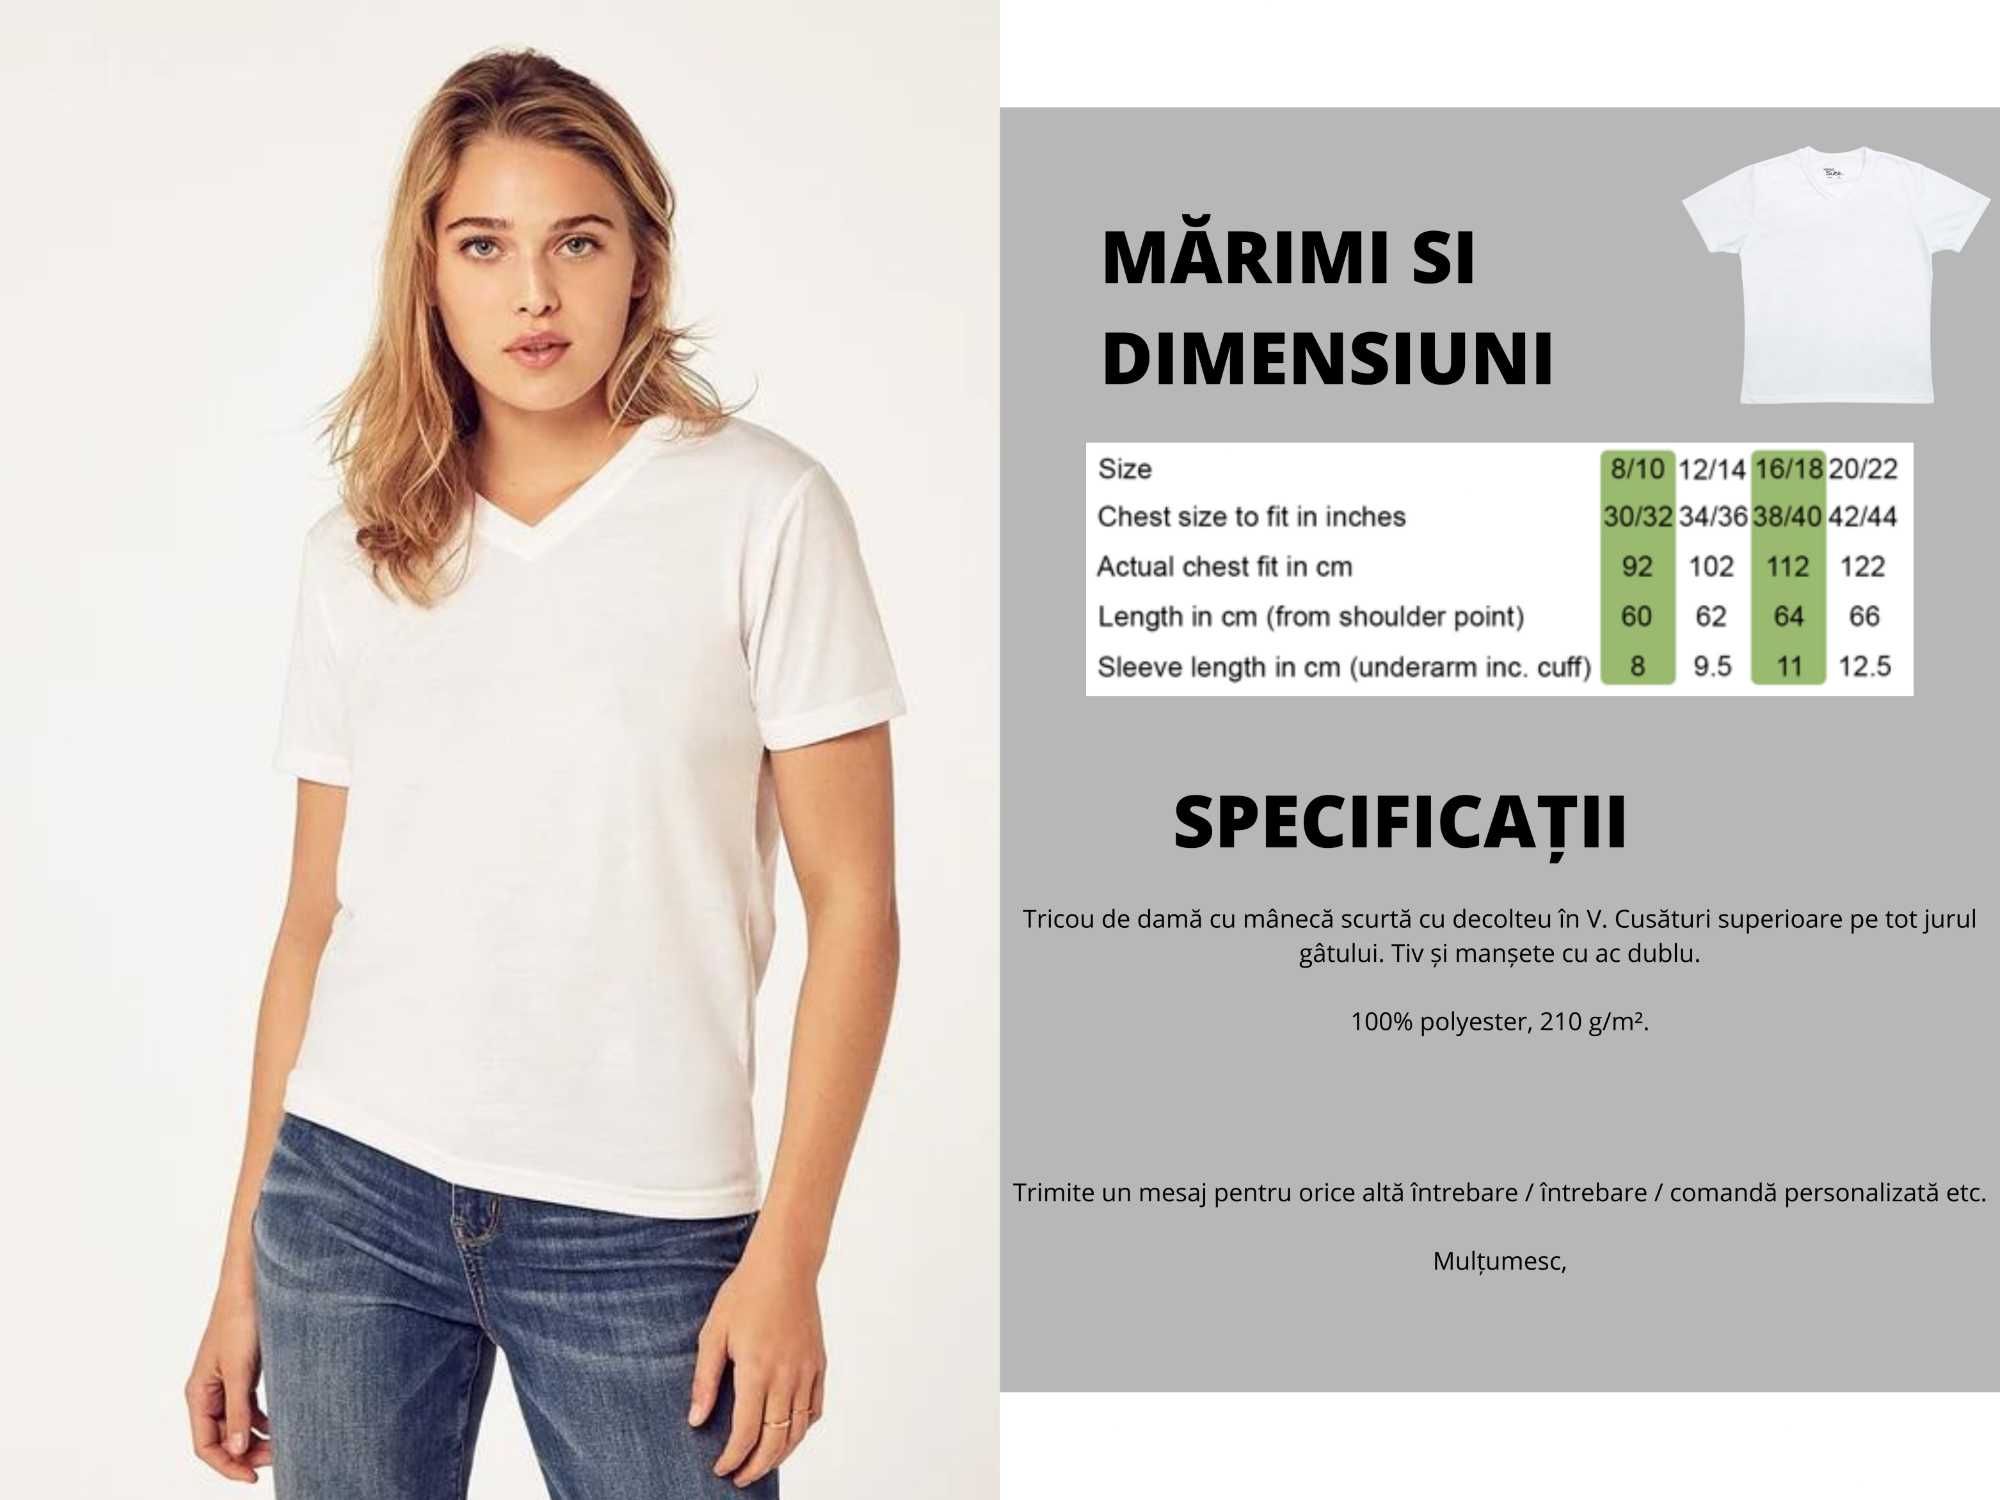 Tricou personalizat pentru femei - Gat rotund / in V - Orice design